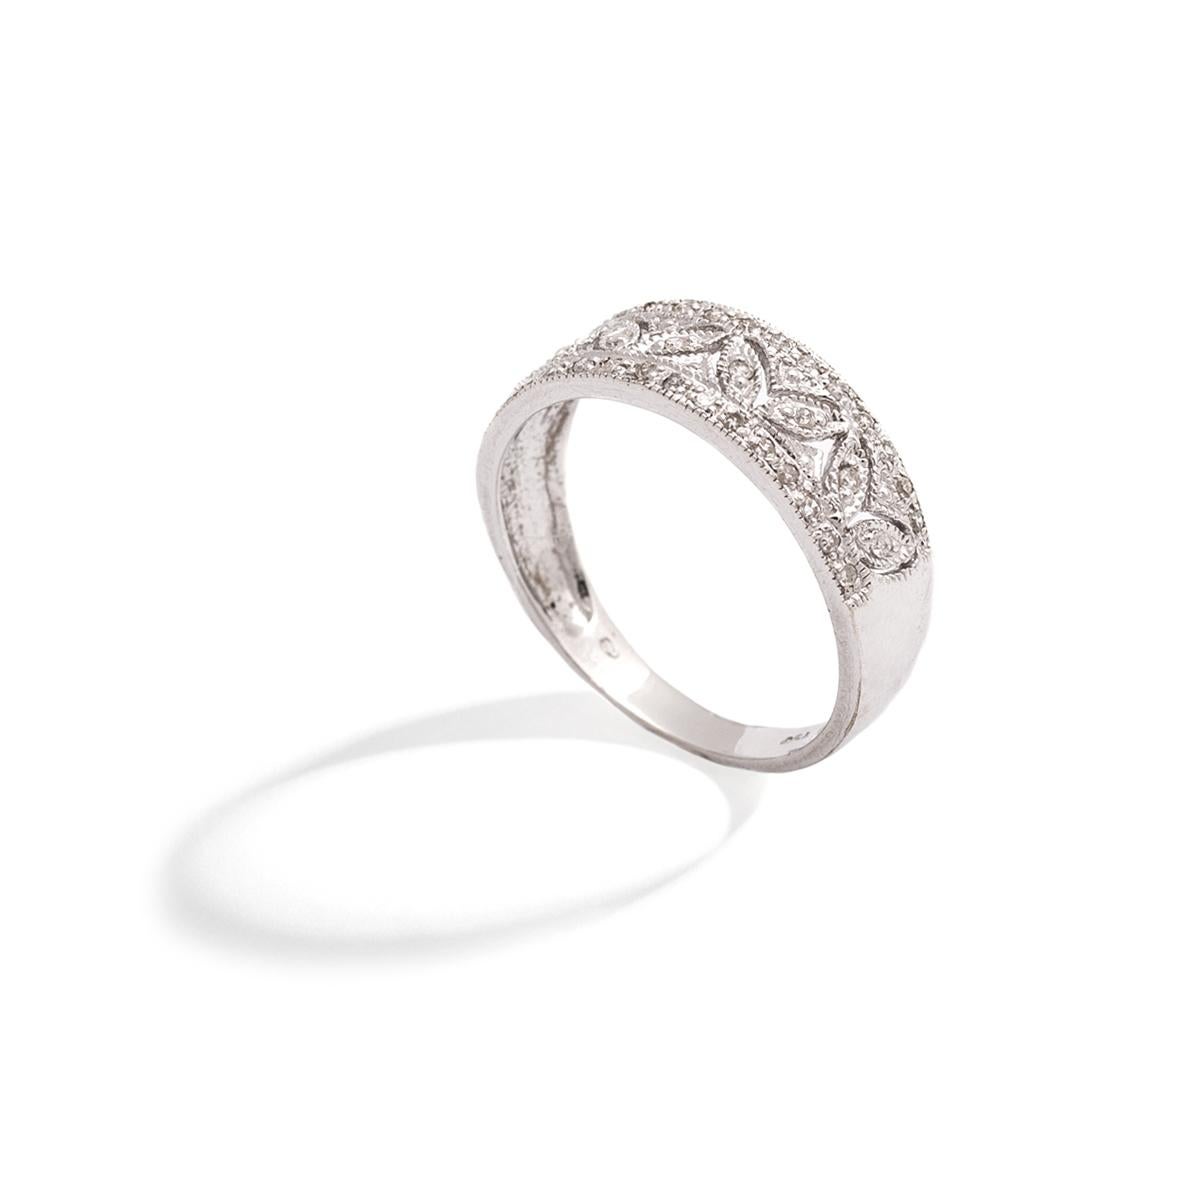 Diamant Weißgold 18k Band Ring.
Dicke des Rings an der Spitze: 6.90 Millimeter.
Ringgröße: 7.
Bruttogewicht: 3,05 Gramm.
